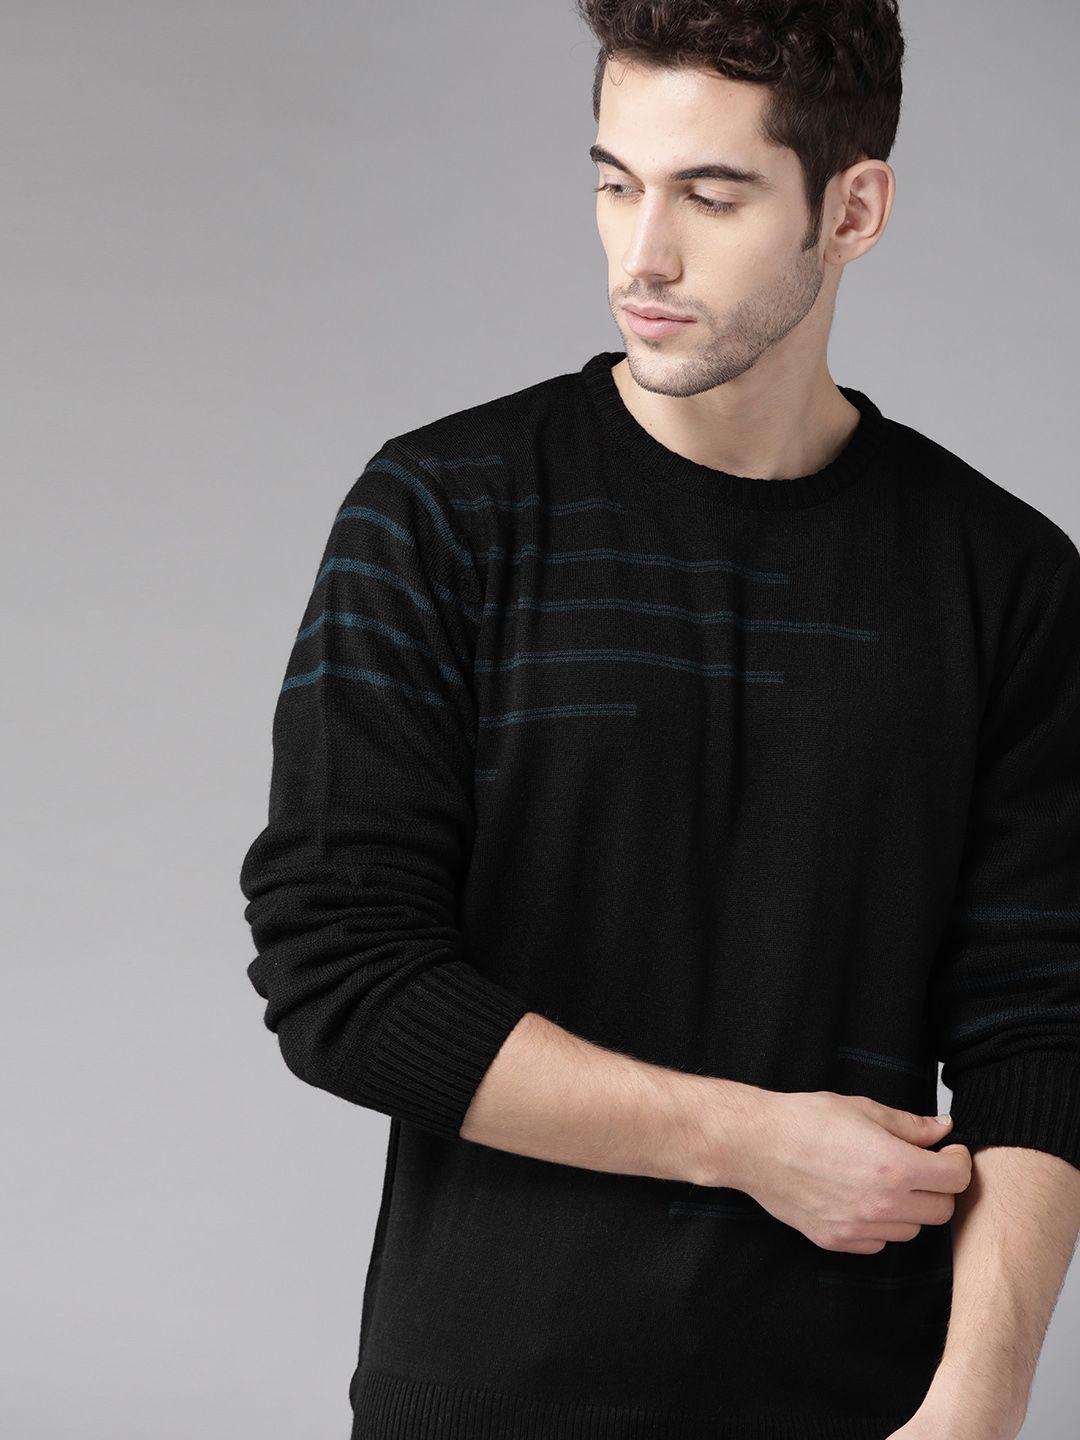 Roadster Men Black & Teal Blue Self Design Pullover Sweater